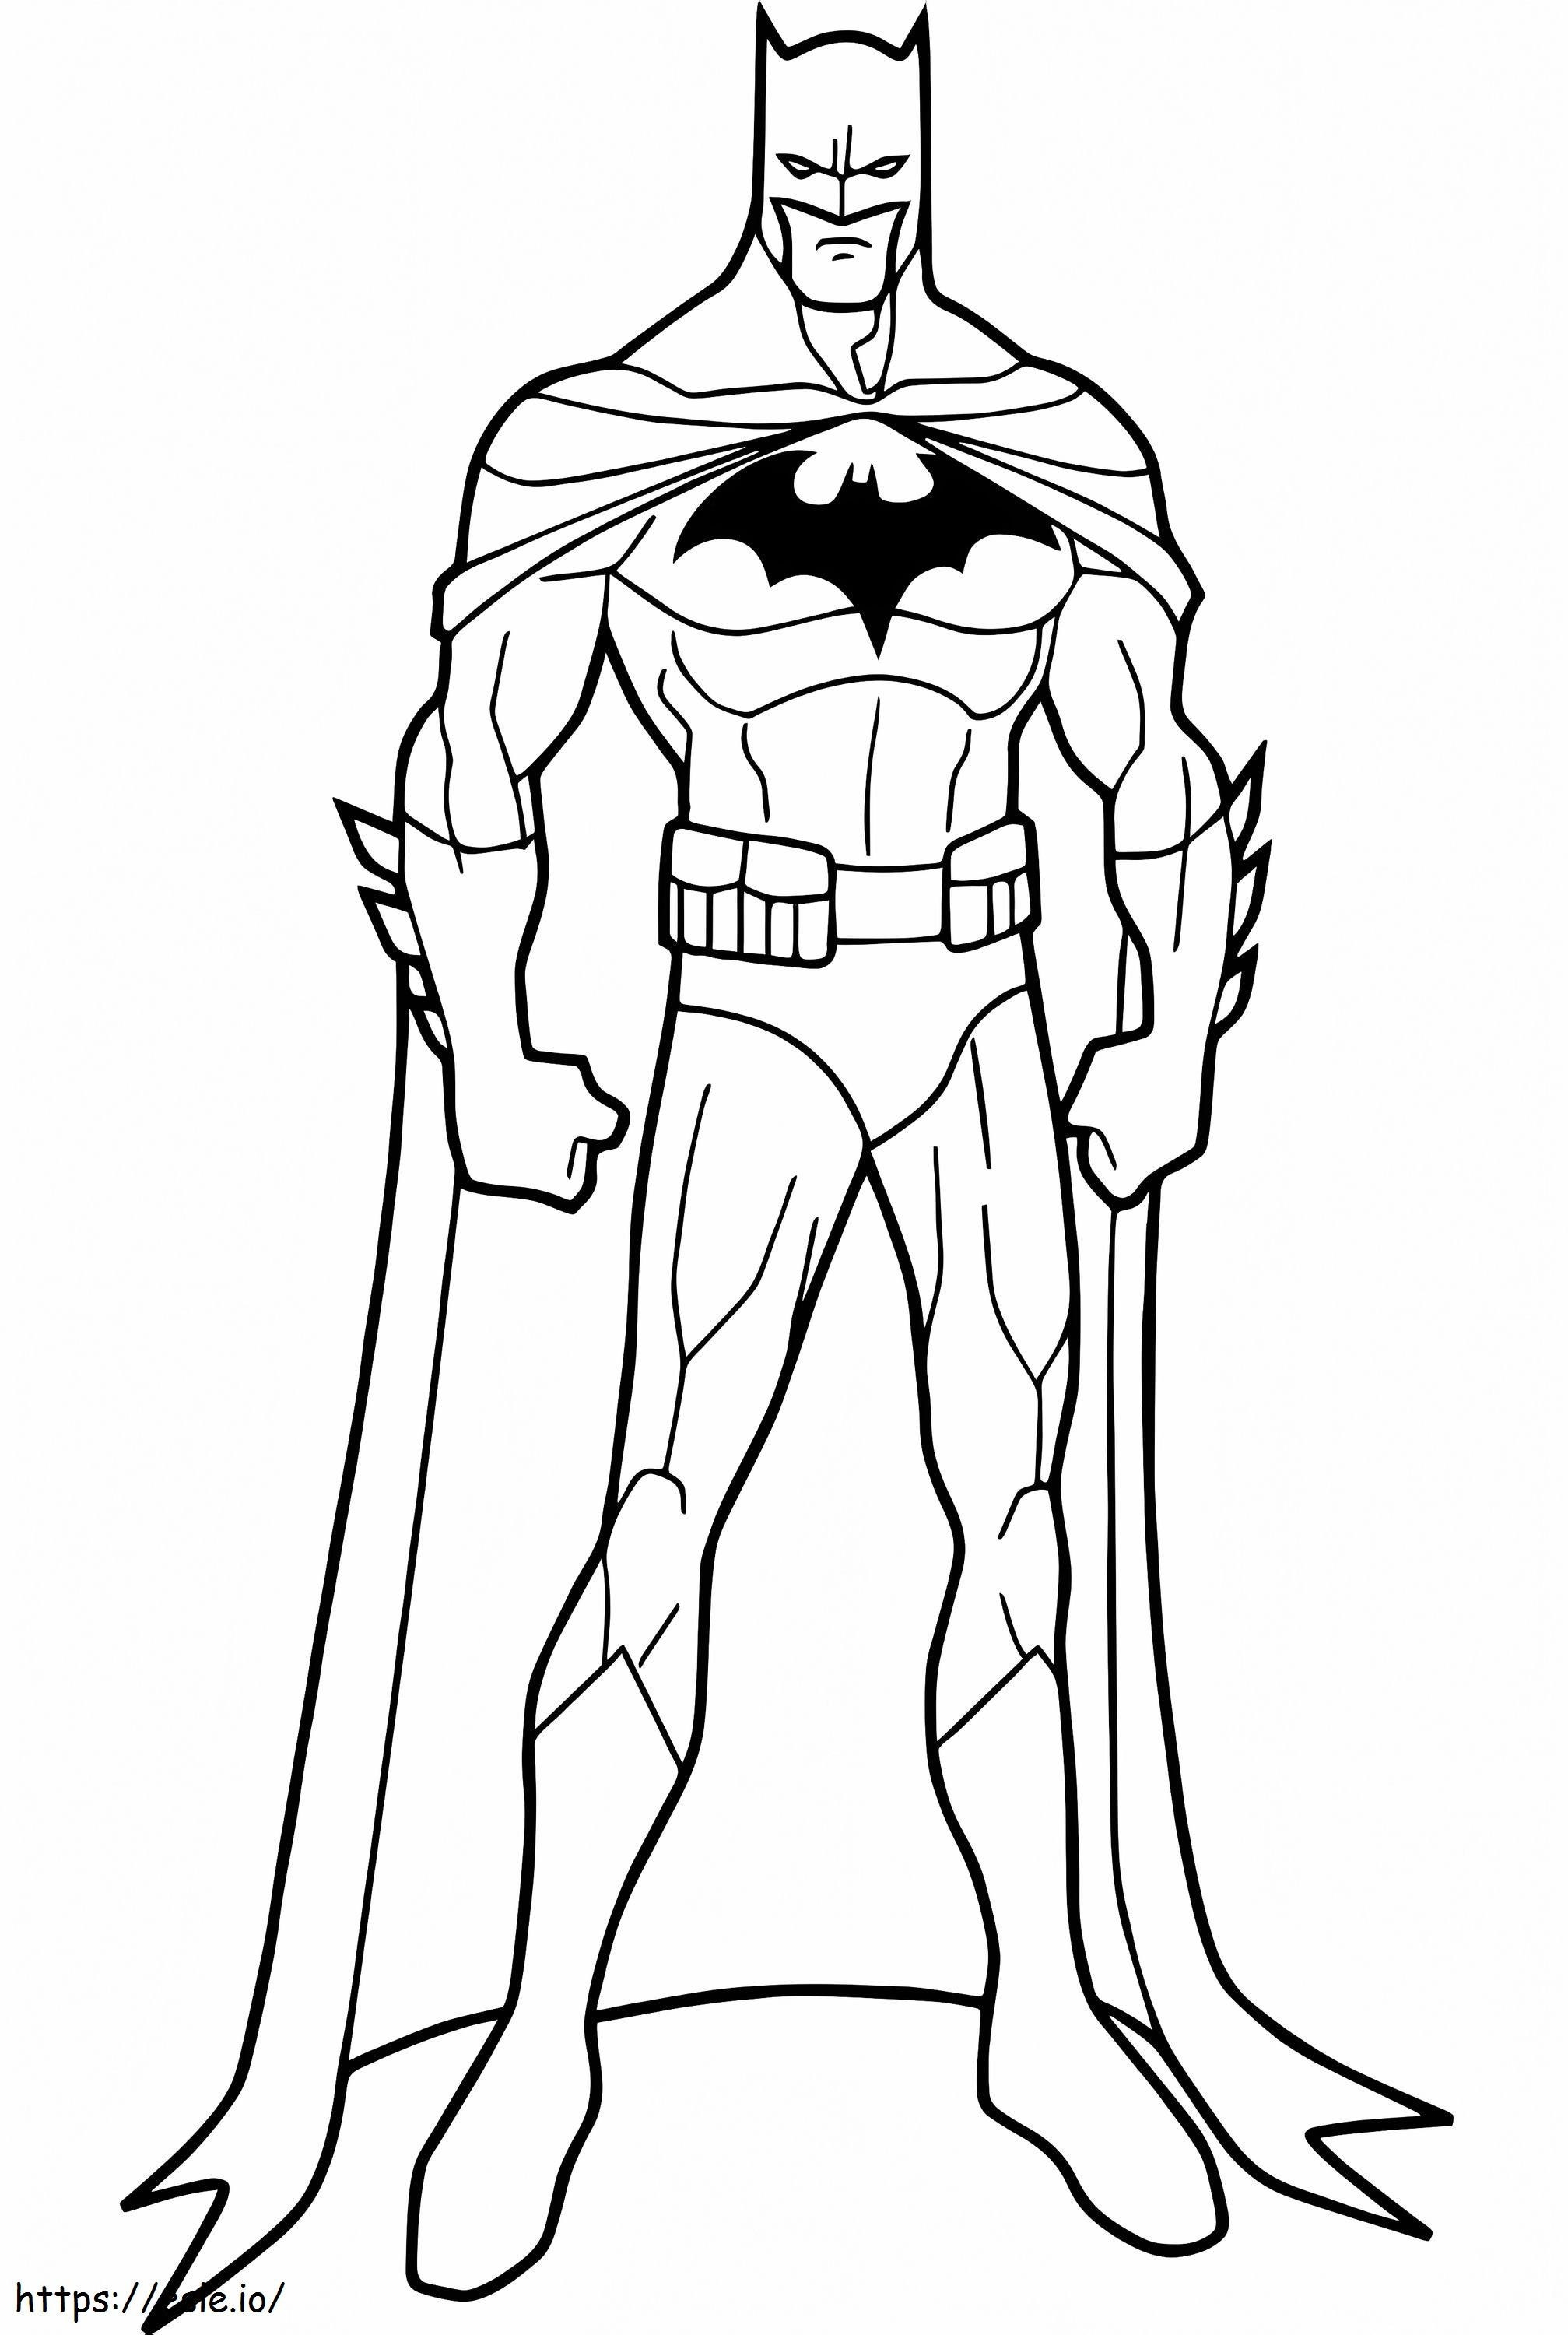 Corpo do Batman para colorir